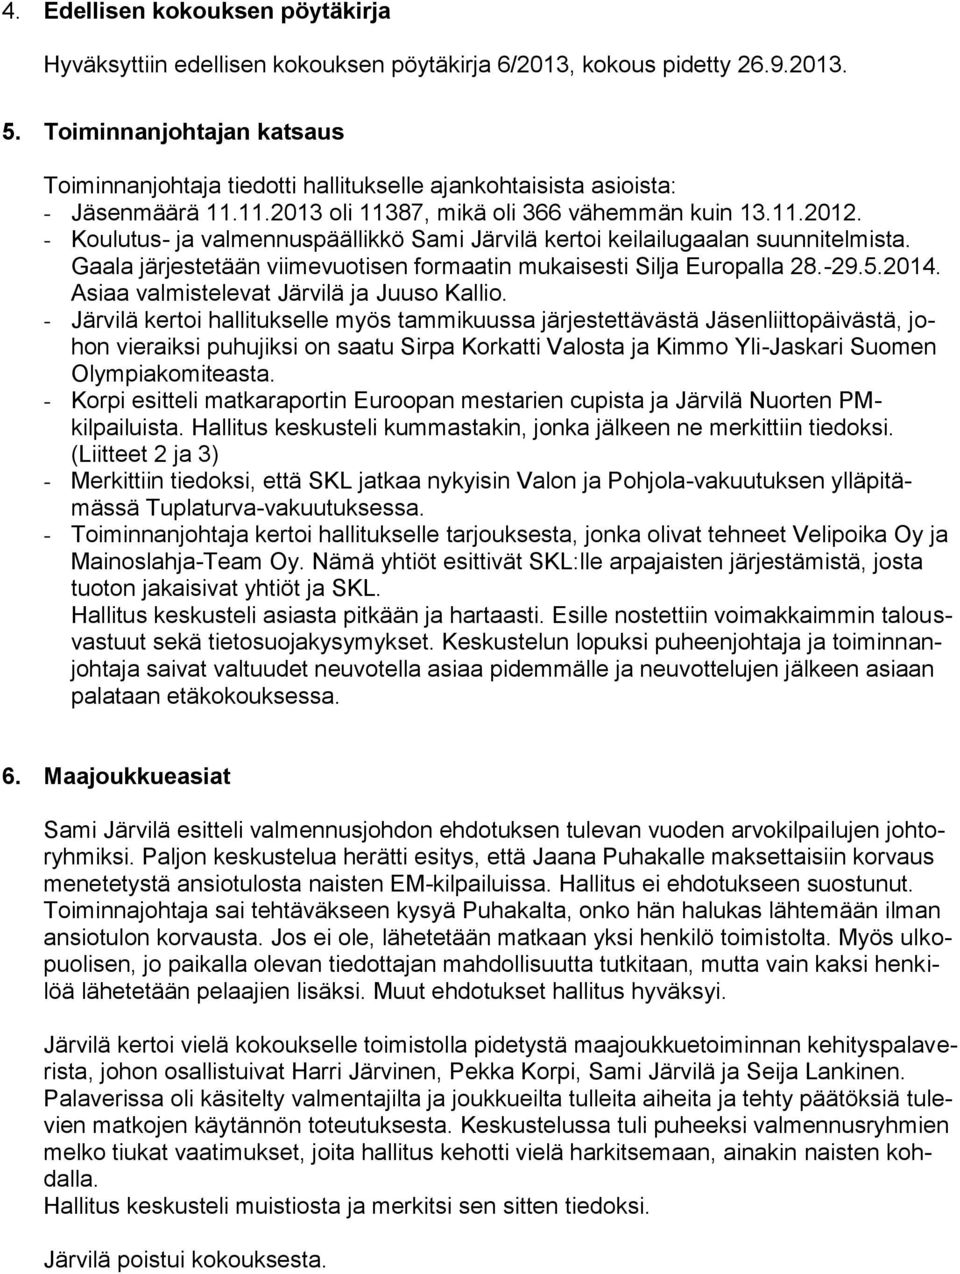 - Koulutus- ja valmennuspäällikkö Sami Järvilä kertoi keilailugaalan suunnitelmista. Gaala järjestetään viimevuotisen formaatin mukaisesti Silja Europalla 28.-29.5.2014.